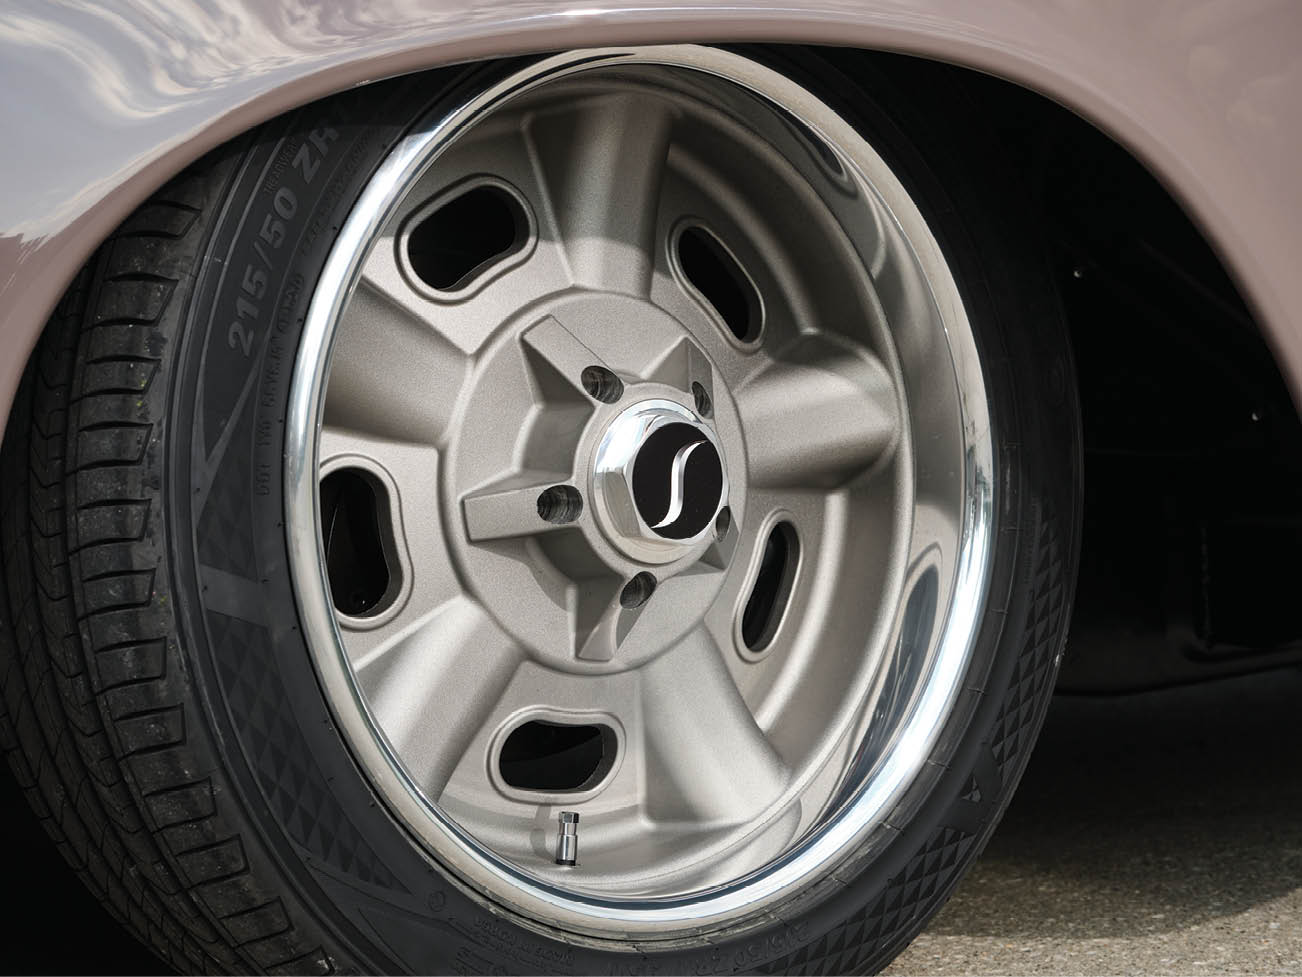 '50 Studebaker tire